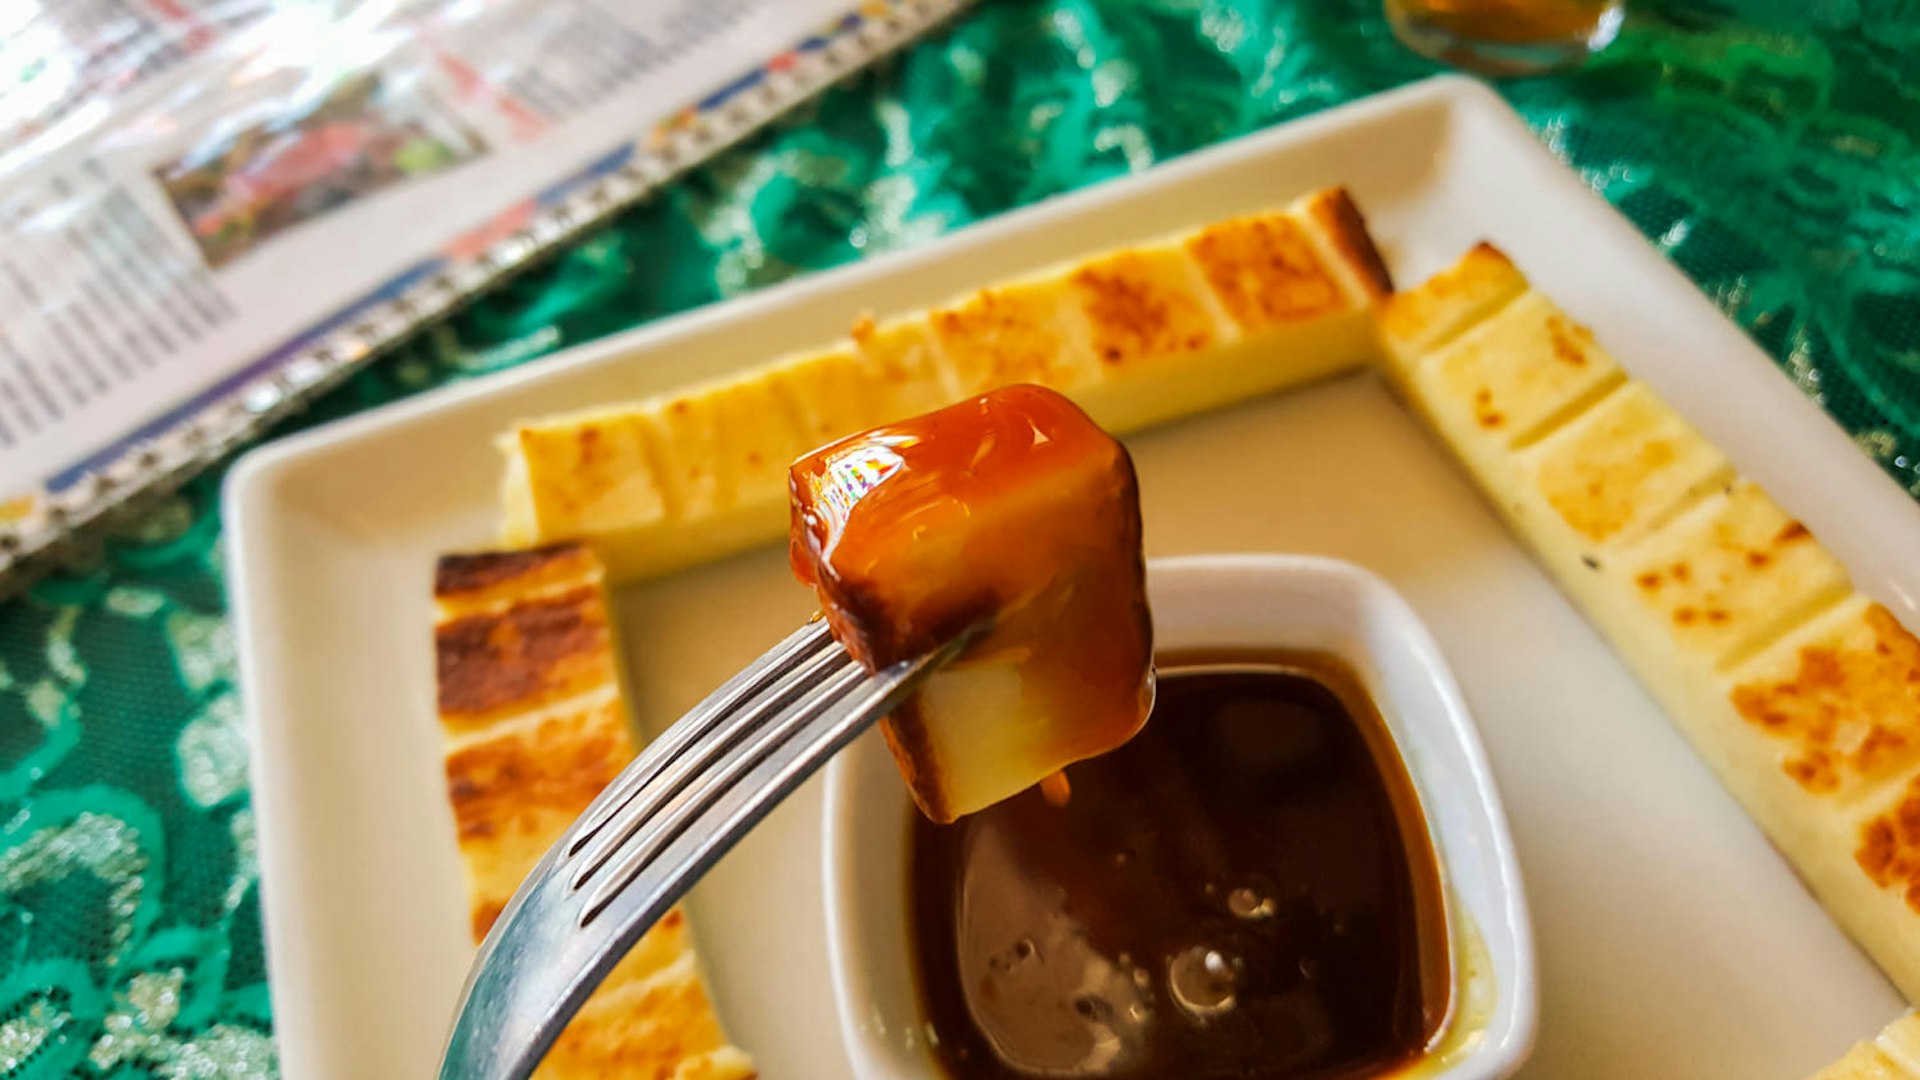 Queijo coalho com melado from Feira São Cristóvão © Tom Le Mesurier / Lonely Planet